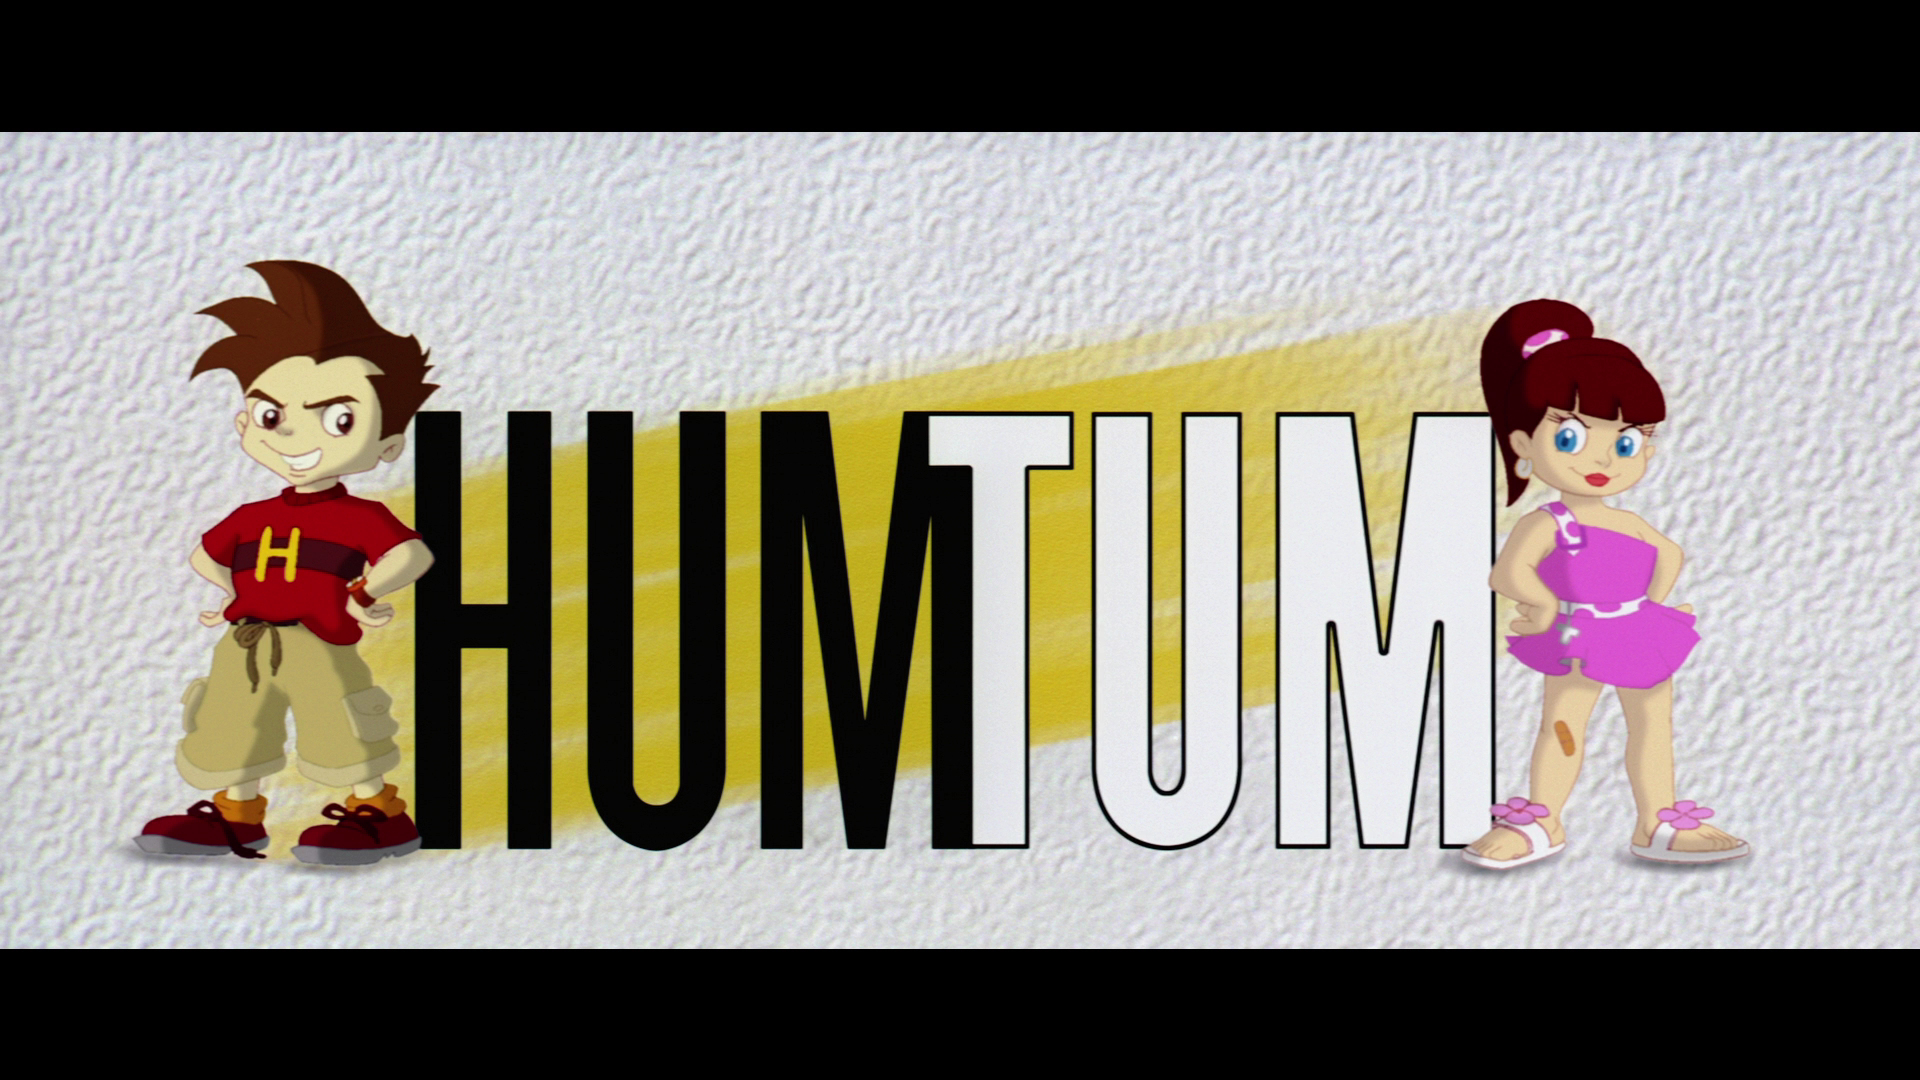 Hum Tum [2004] Cd1 Dvdrip Xvid